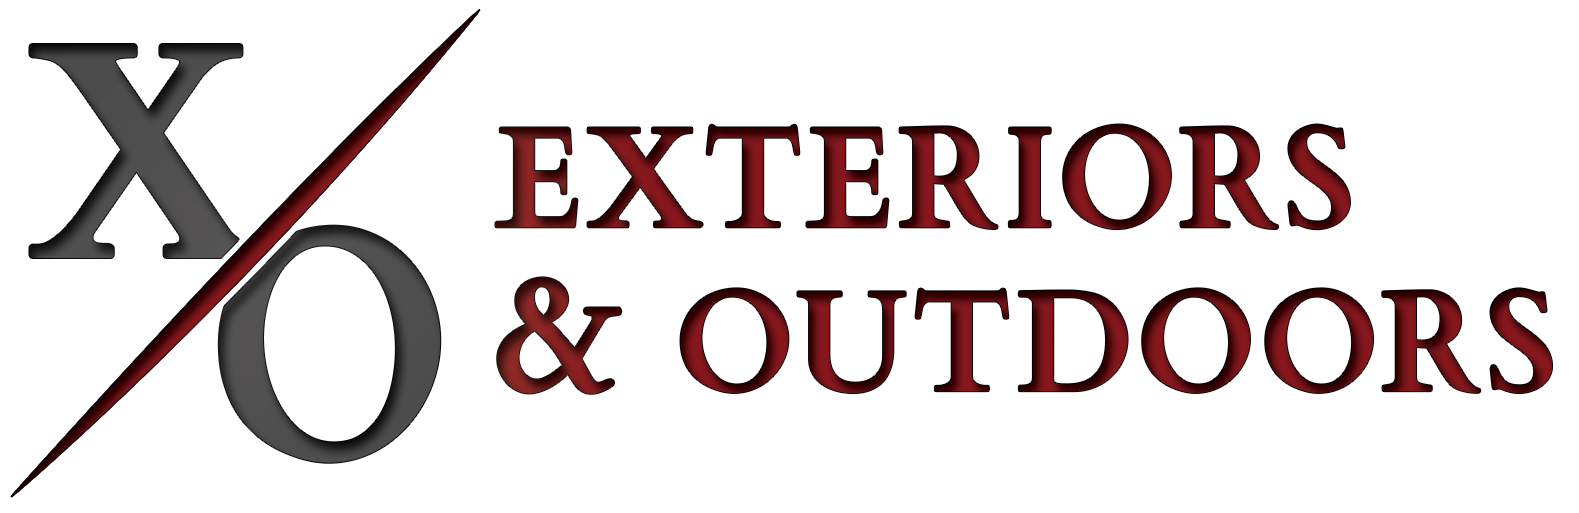 11Exteriors & Outdoors Logo